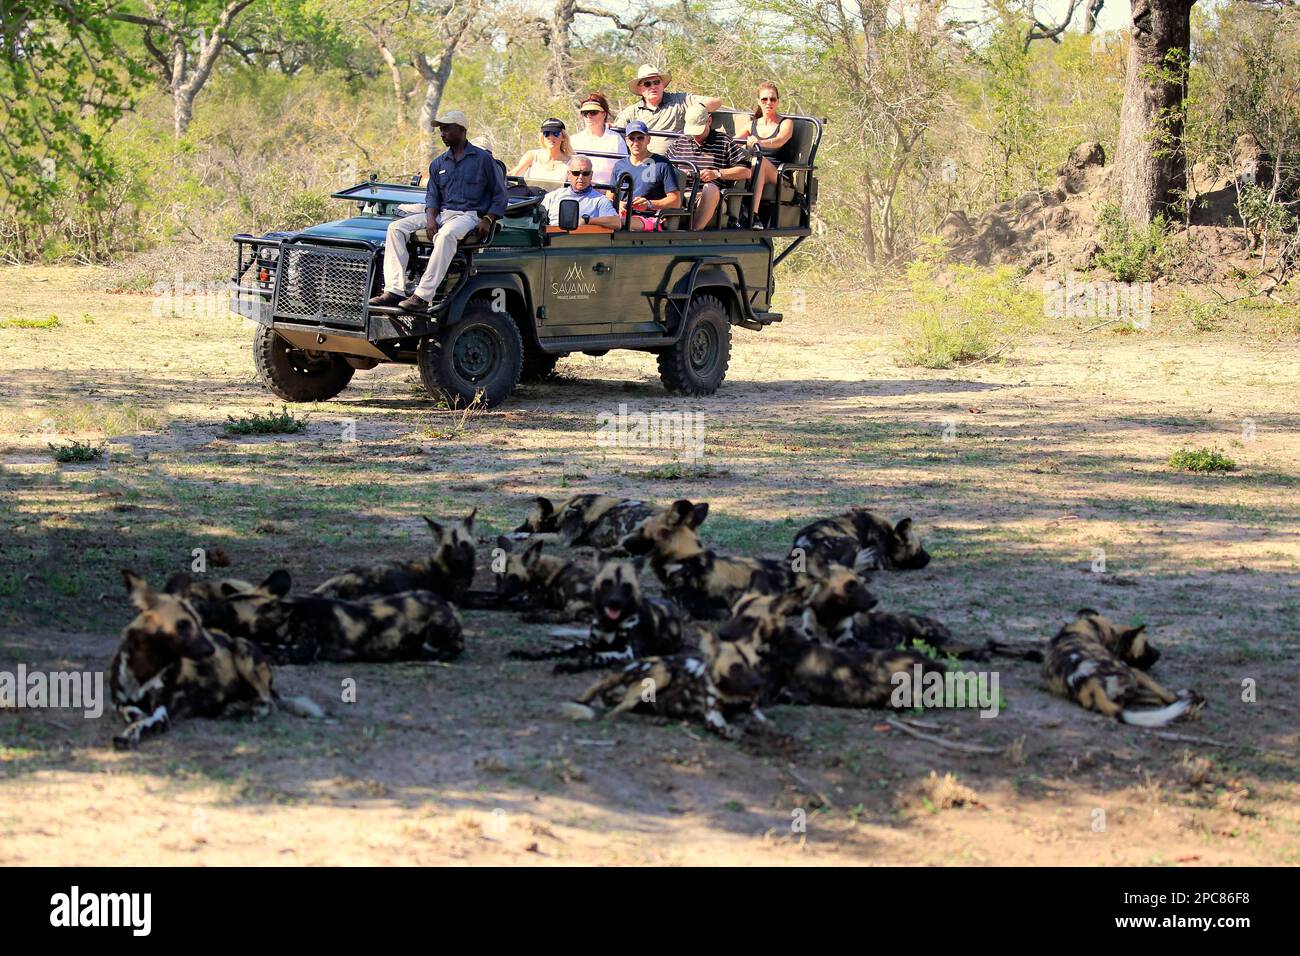 Safari, observez le chien sauvage africain (Lycaon pictus), regardez le jeu, jouez, réserve de sable de Sabi, parc national Kruger, Afrique du Sud Banque D'Images